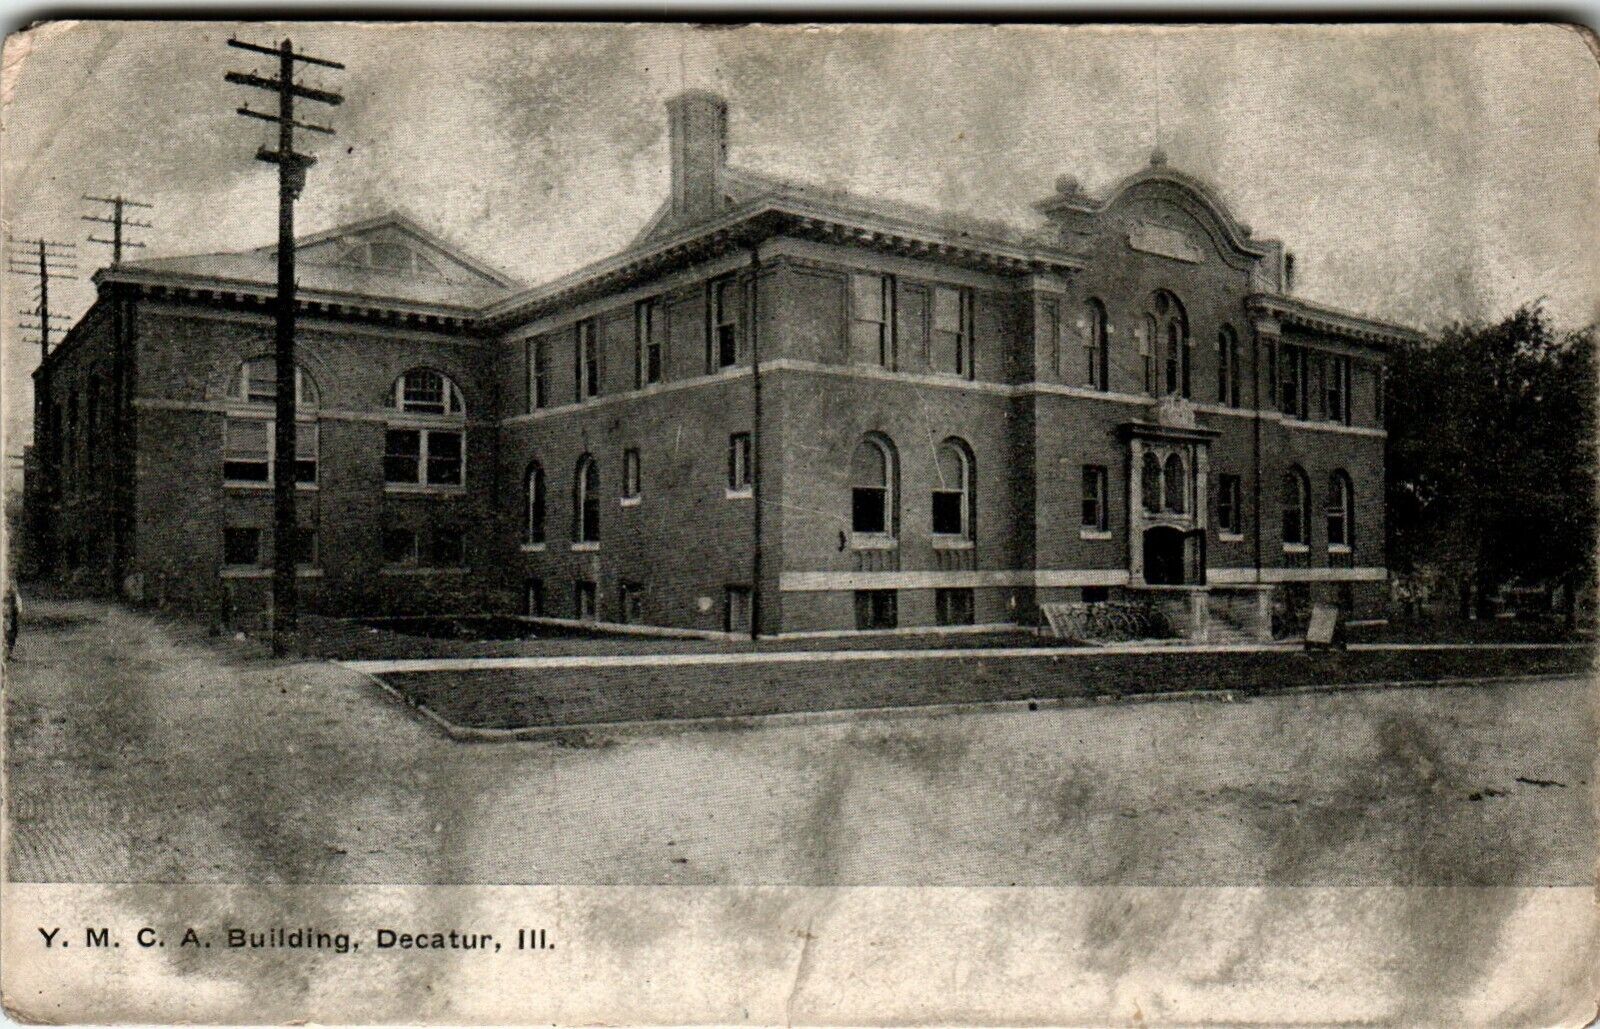 Y. M. C. A Building Decatur, Illinois Postcard